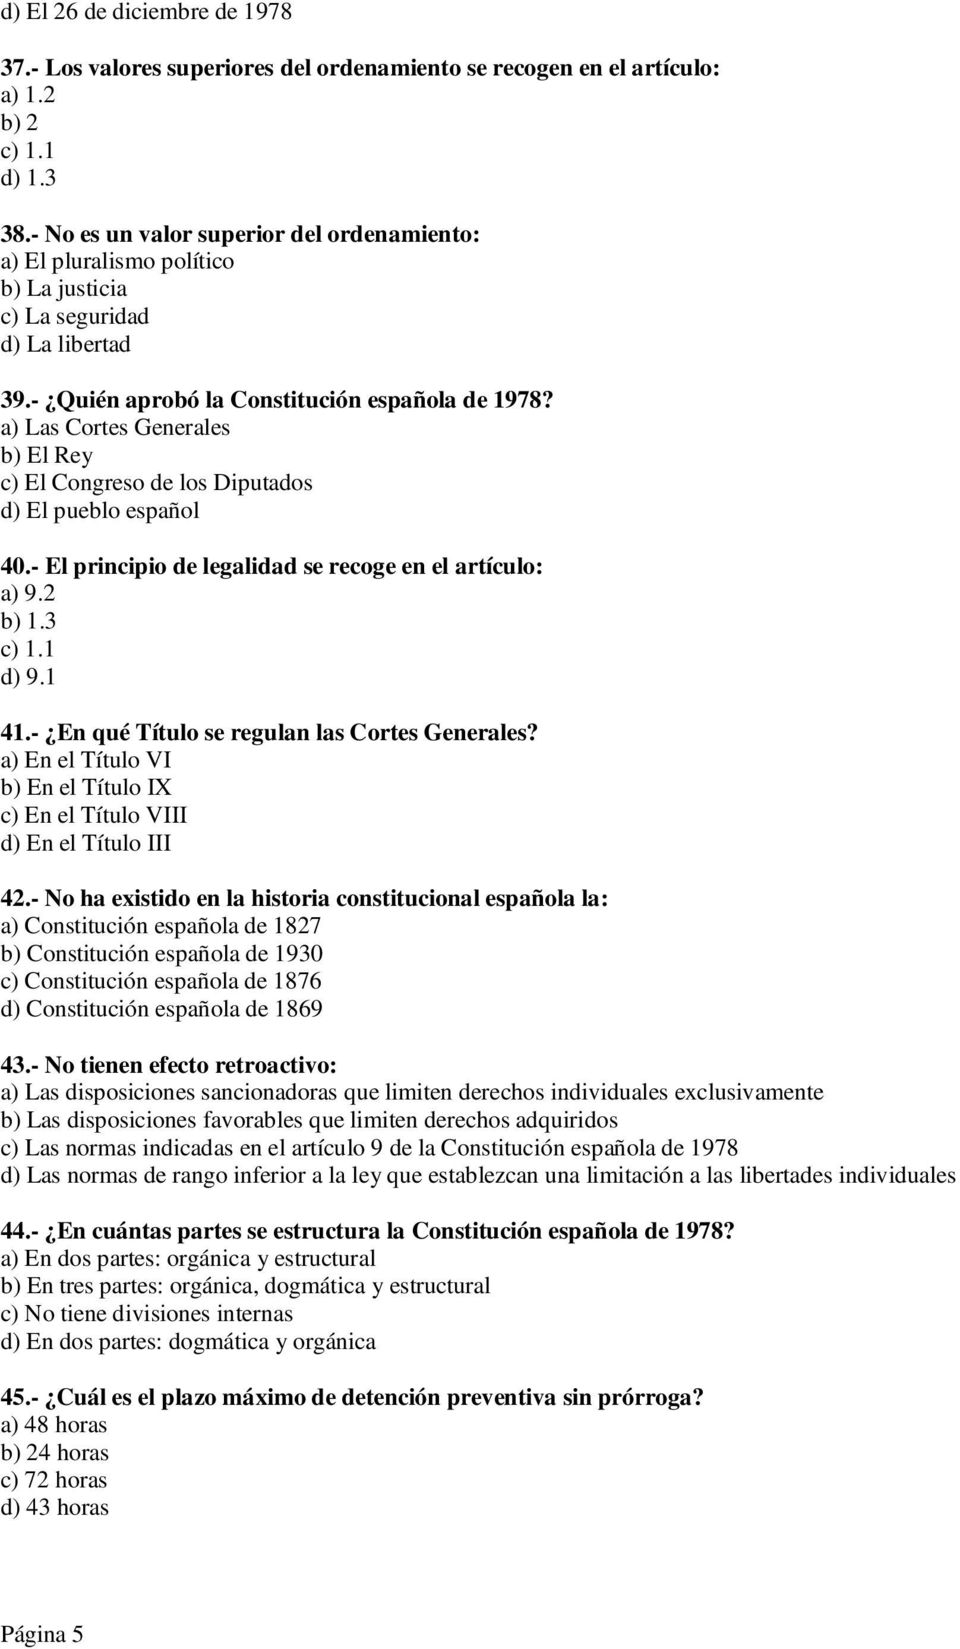 a) Las Cortes Generales b) El Rey c) El Congreso de los Diputados d) El pueblo español 40.- El principio de legalidad se recoge en el artículo: a) 9.2 b) 1.3 c) 1.1 d) 9.1 41.